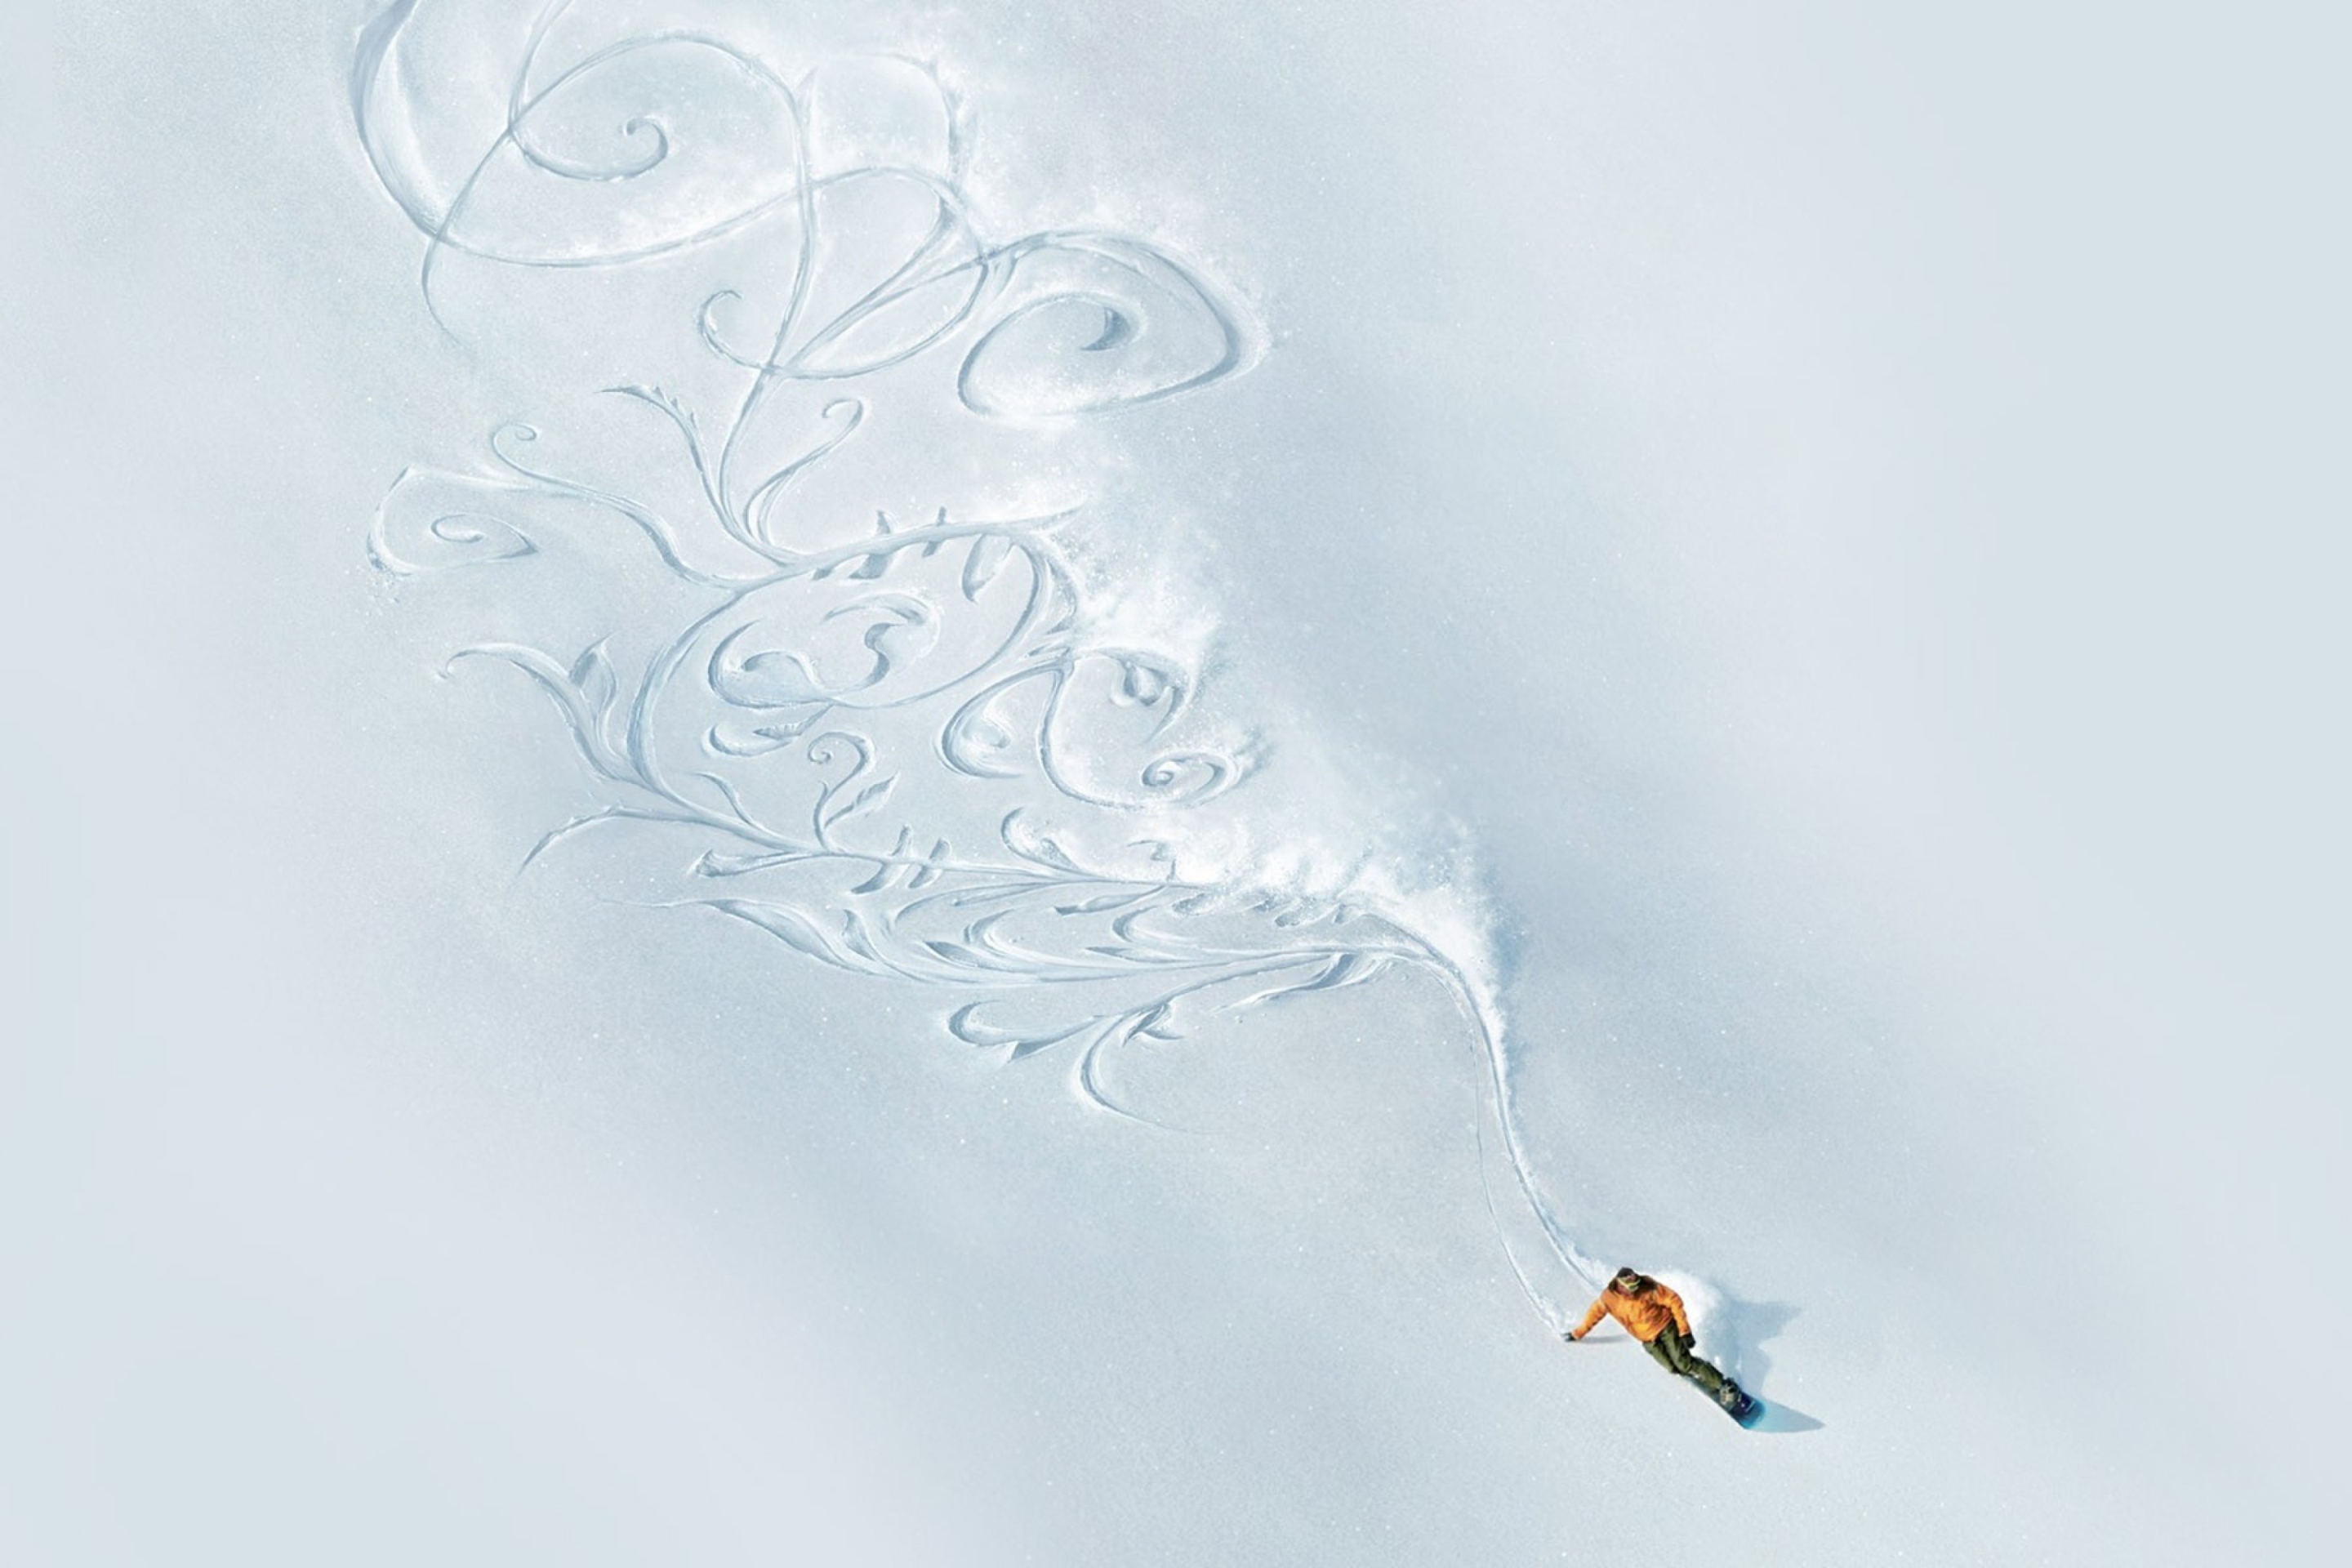 Das Snowboarding Art Wallpaper 2880x1920